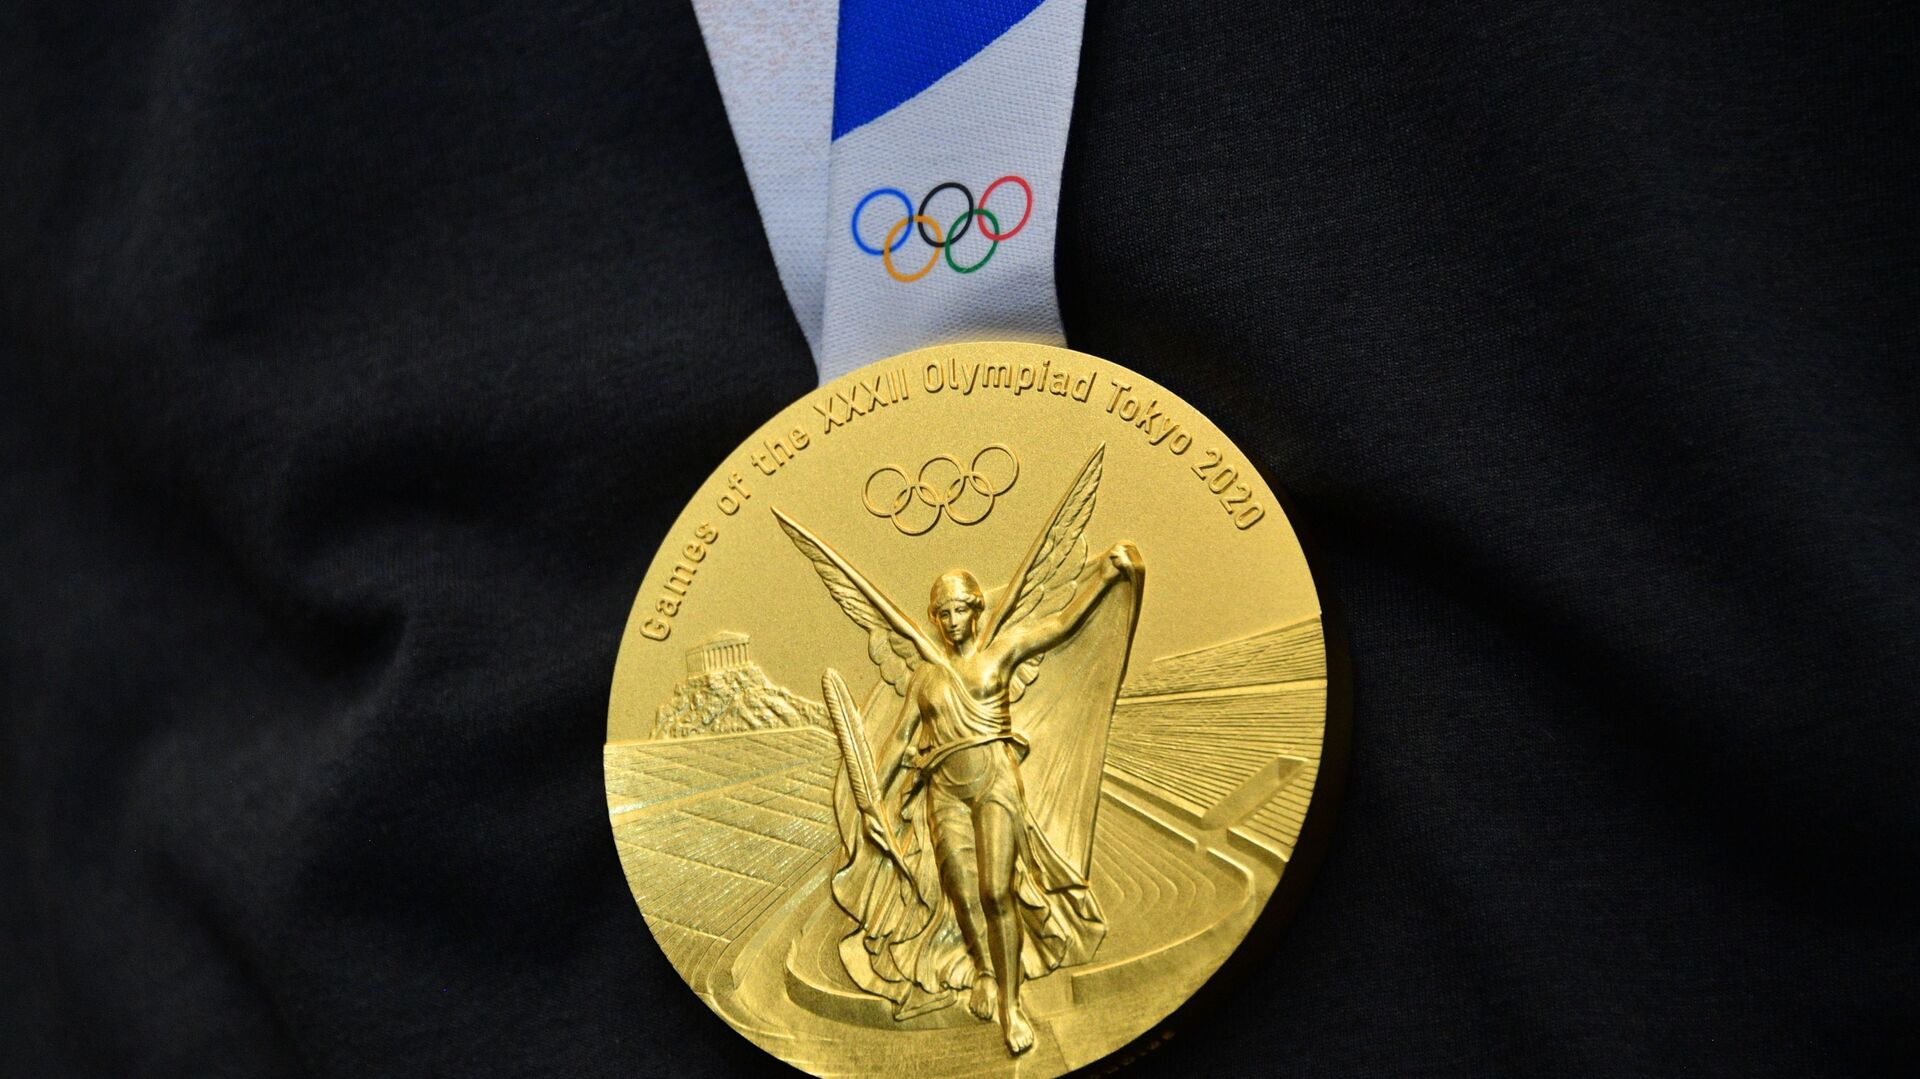 Huy chương vàng Thế vận hội Olympic tại Tokyo của vận động viên quần vợt người Nga Andrei Rublev - Sputnik Việt Nam, 1920, 25.08.2021